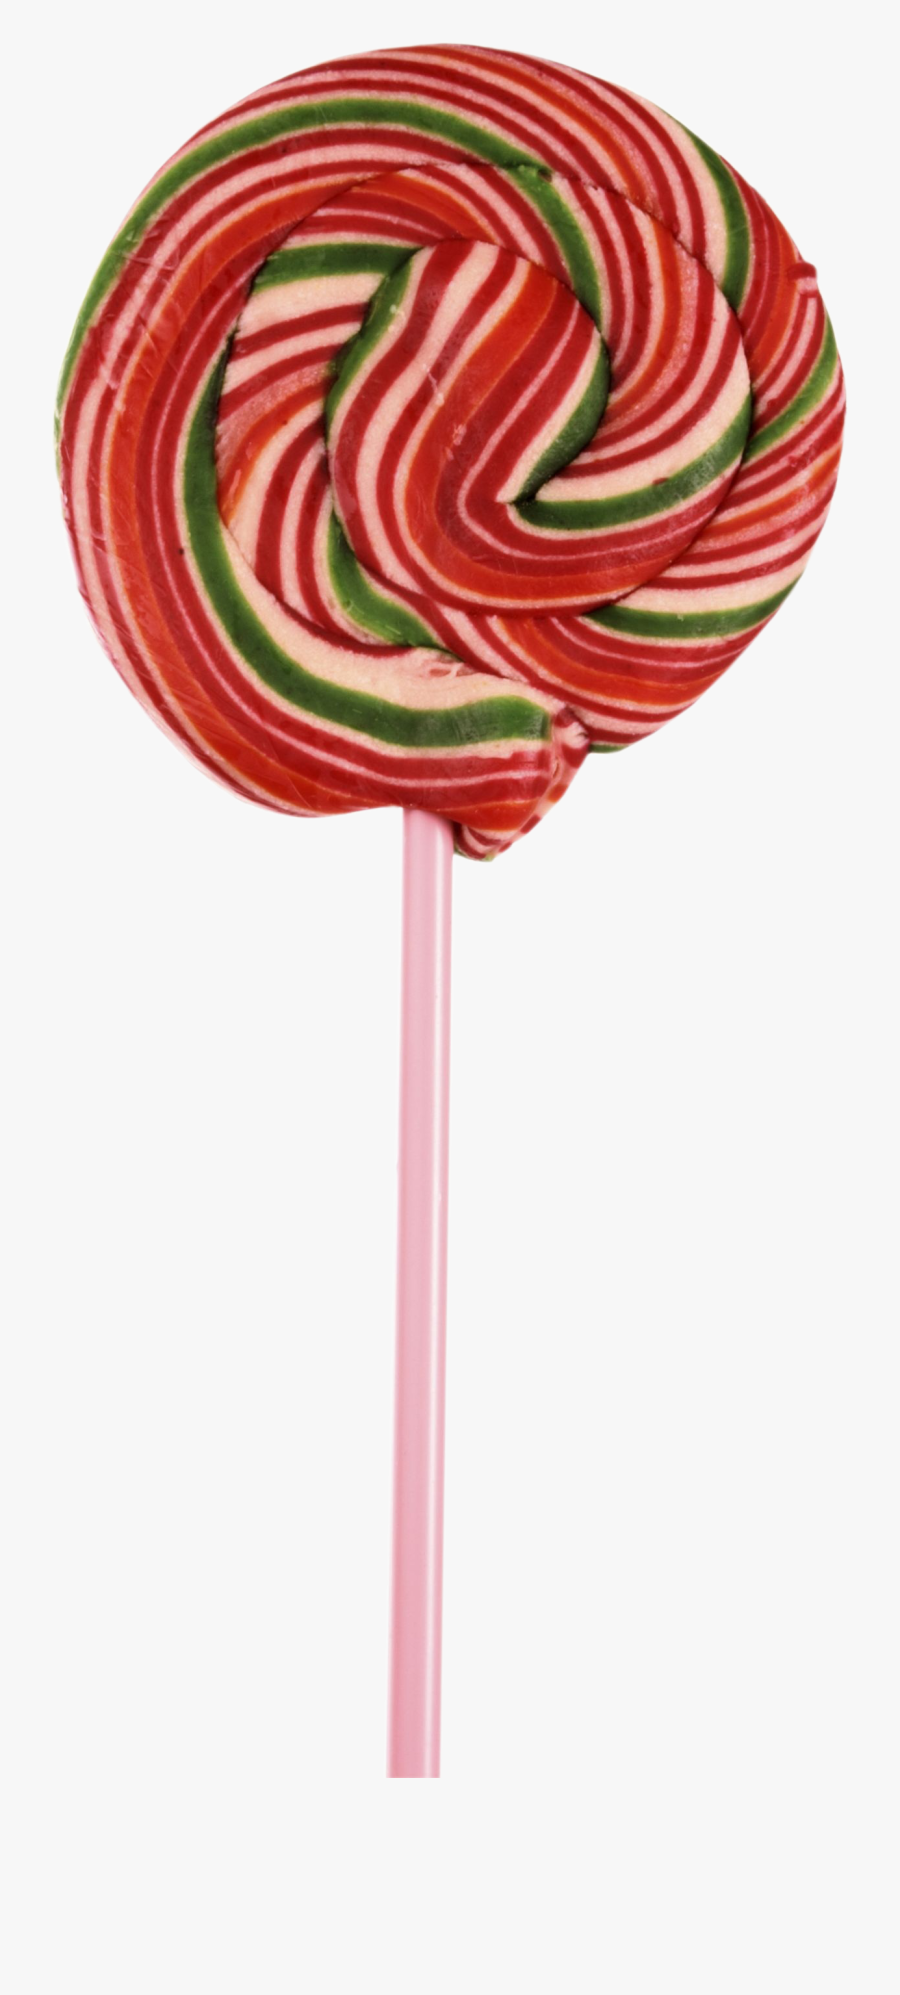 Lollipop - Portable Network Graphics, Transparent Clipart